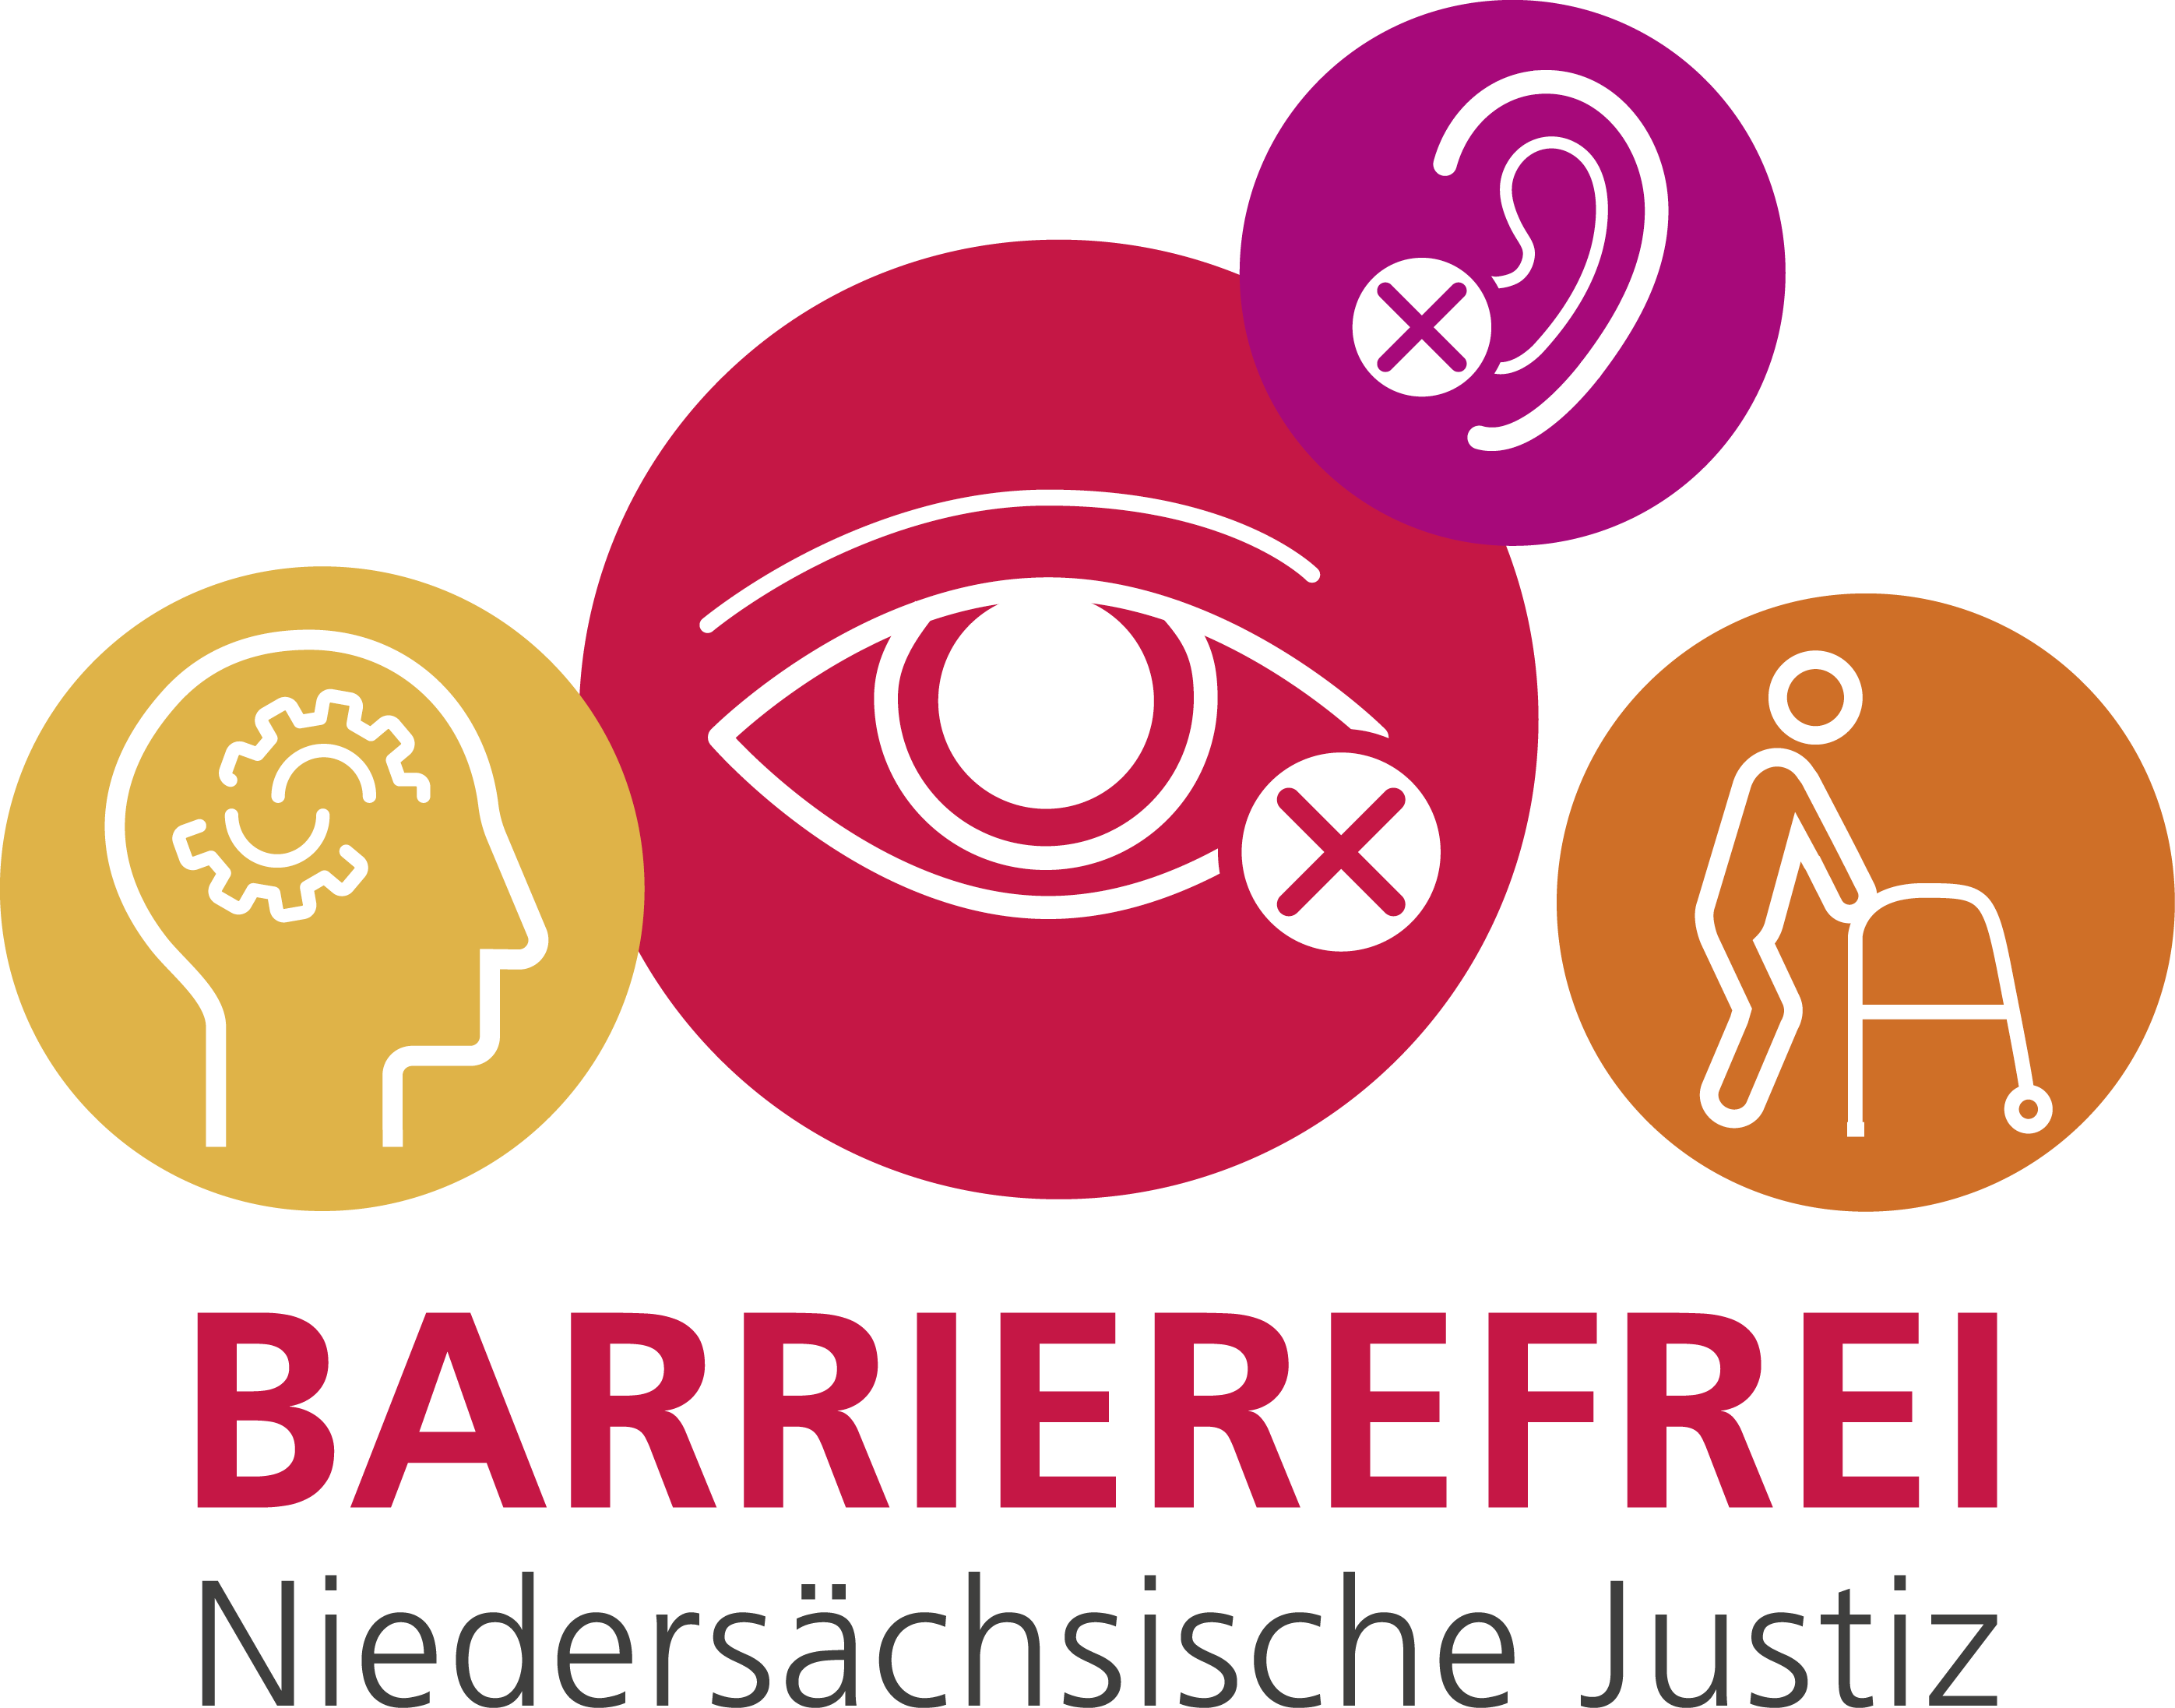 Barrierefrei - Niedersächsische Justiz (zu den Informationen zur Barrierefreiheit)